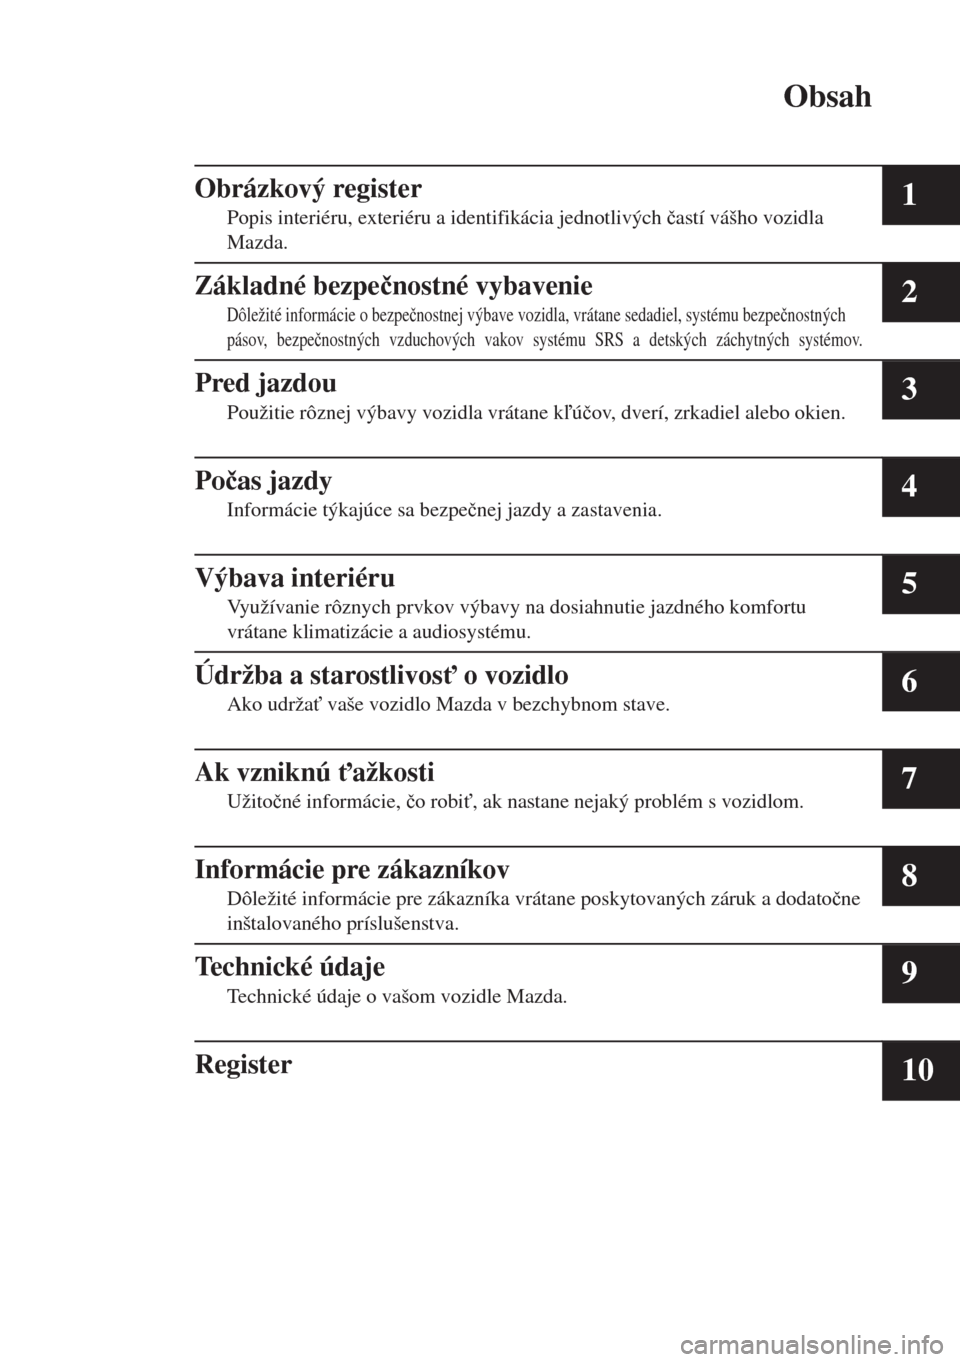 MAZDA MODEL 6 2018  Užívateľská príručka (in Slovak) Obsah
Obrázkový register
Popis interiéru, exteriéru a identifikácia jednotlivých �þastí vášho vozidla
Mazda.1
Základné bezpe�þnostné vybavenie
Dôležité informácie o bezpe�þnostnej v